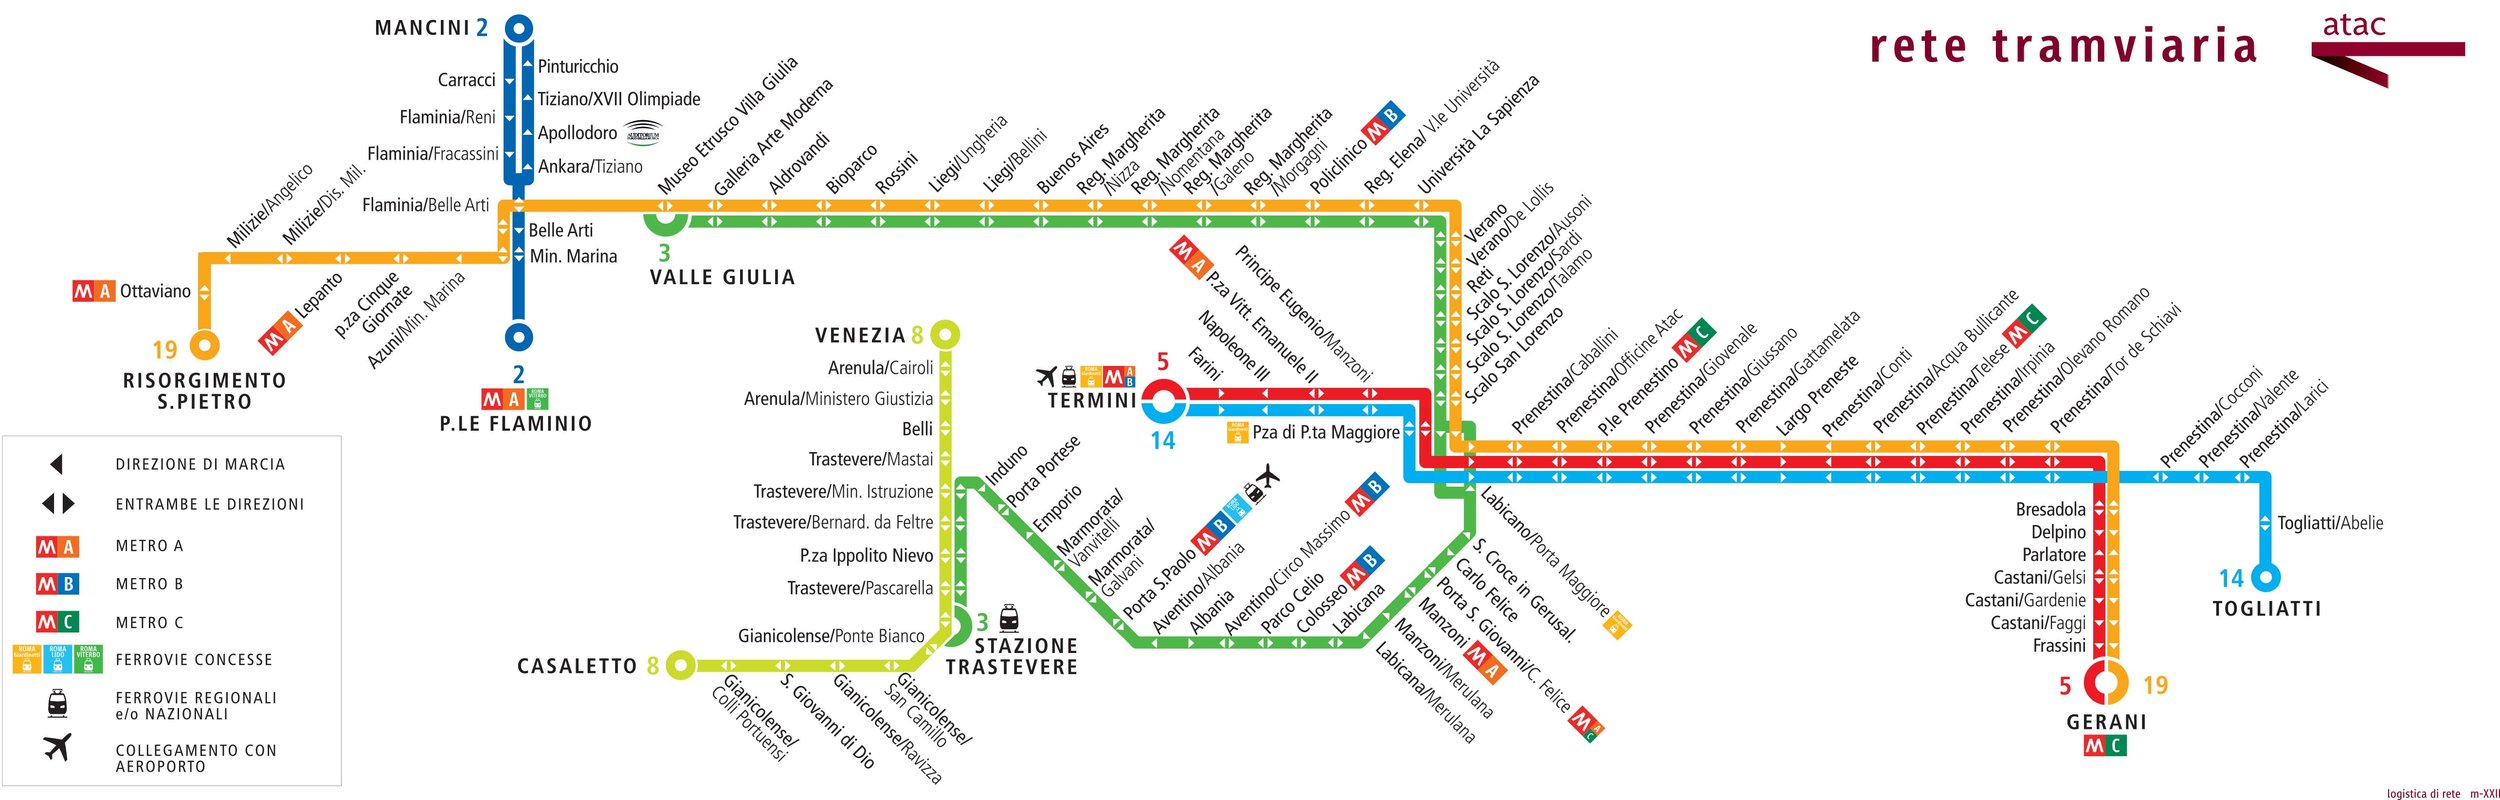 Rome tram - Maps